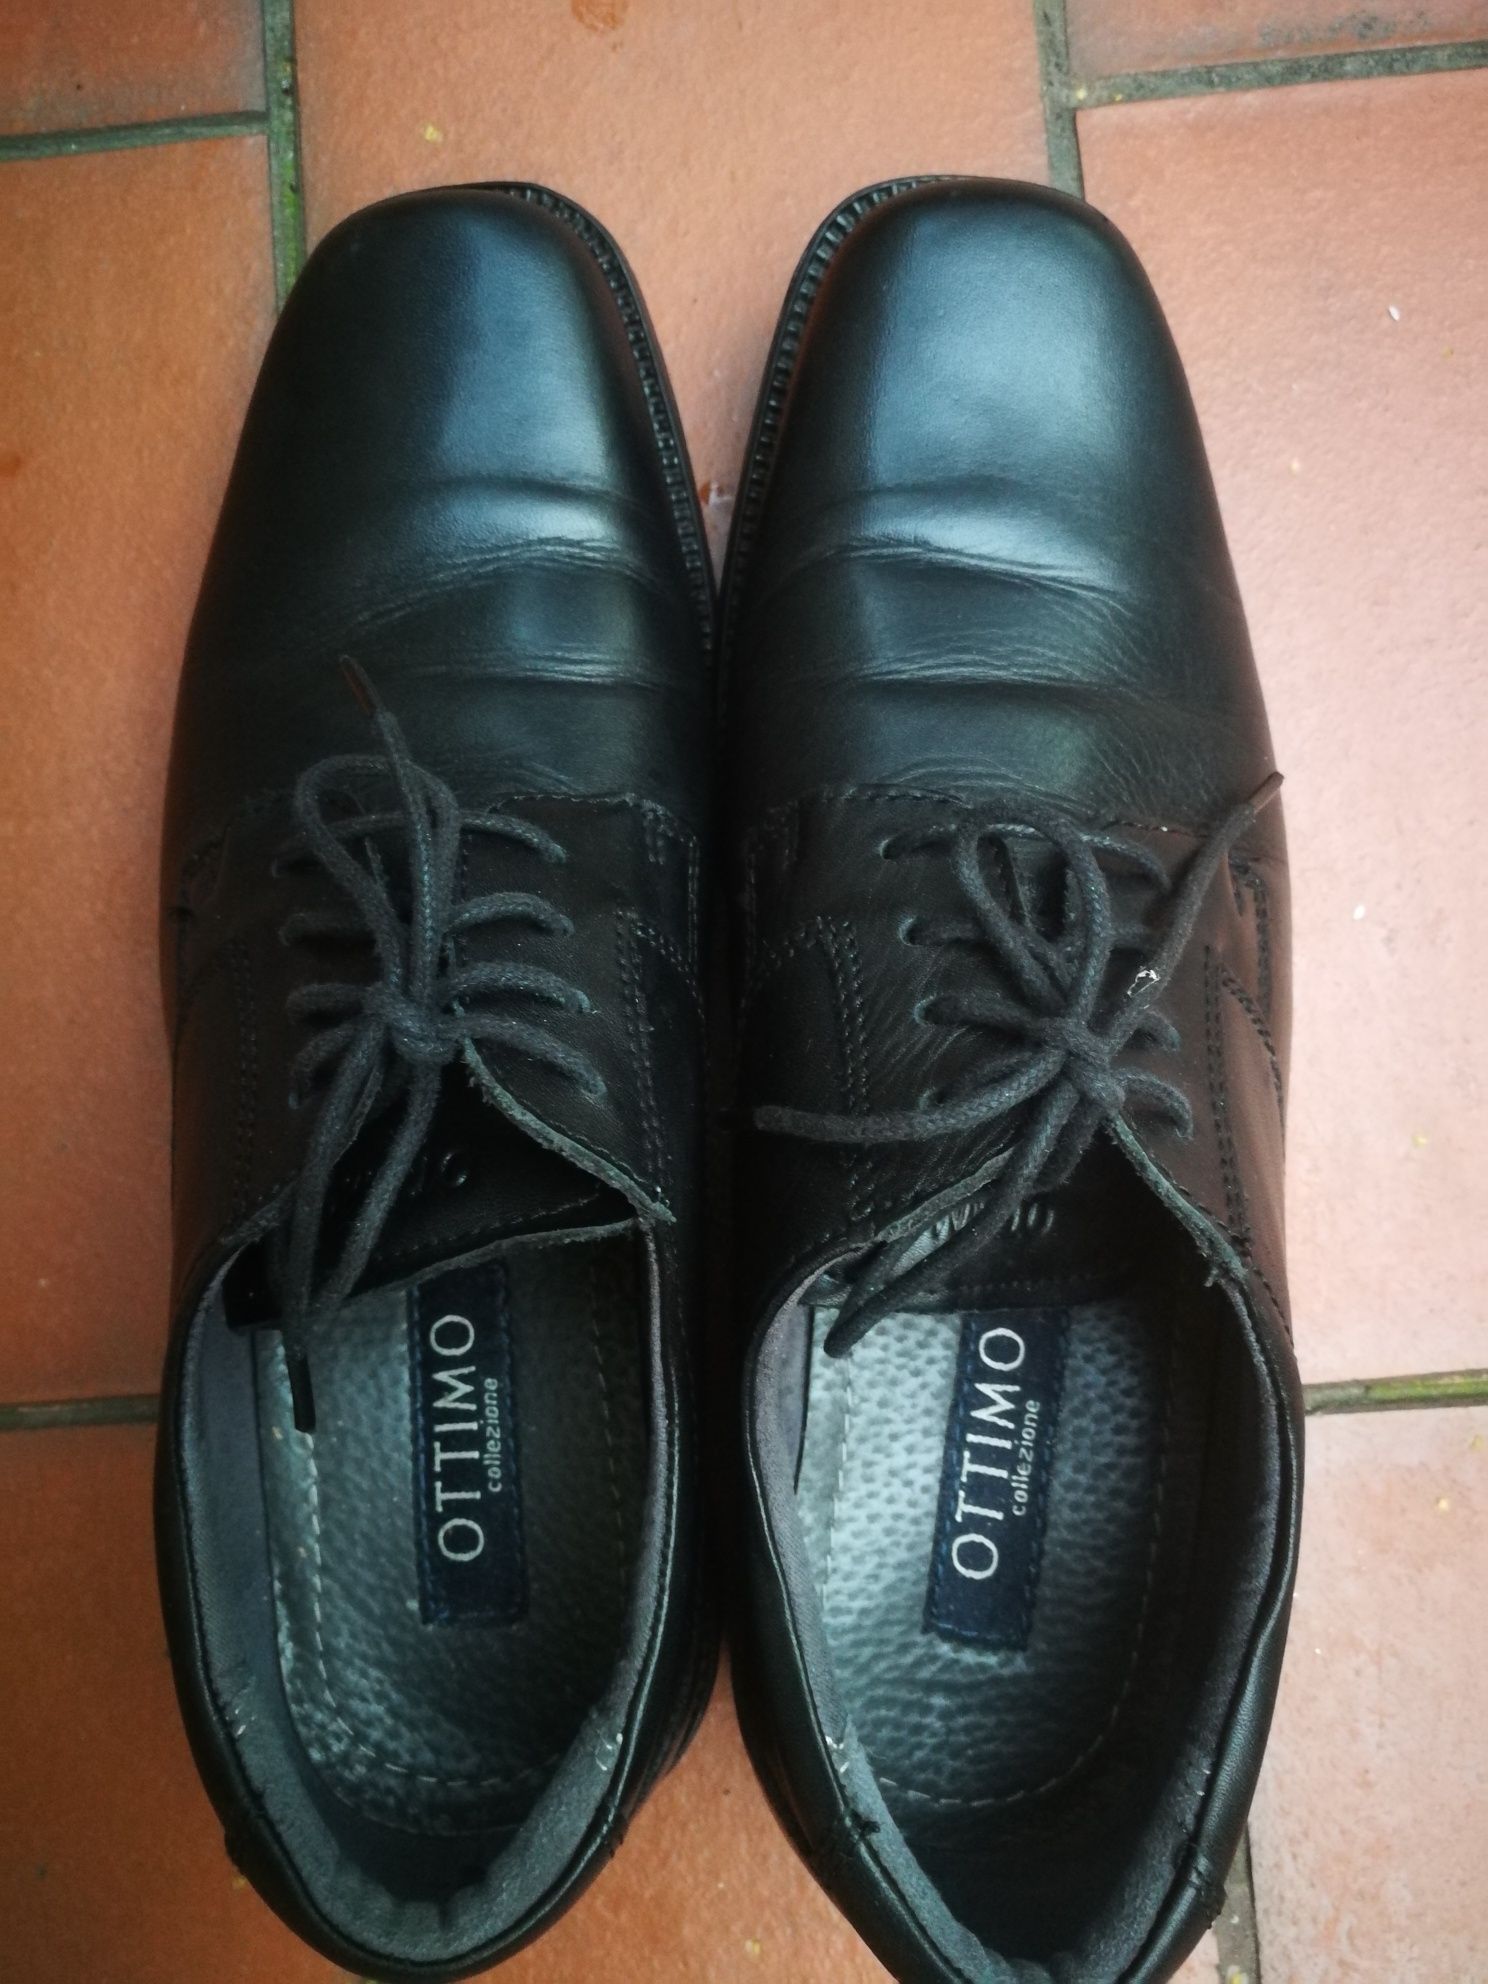 Buty męskie półbuty skórzane pantofle r.40  Ottimimo jak nowe